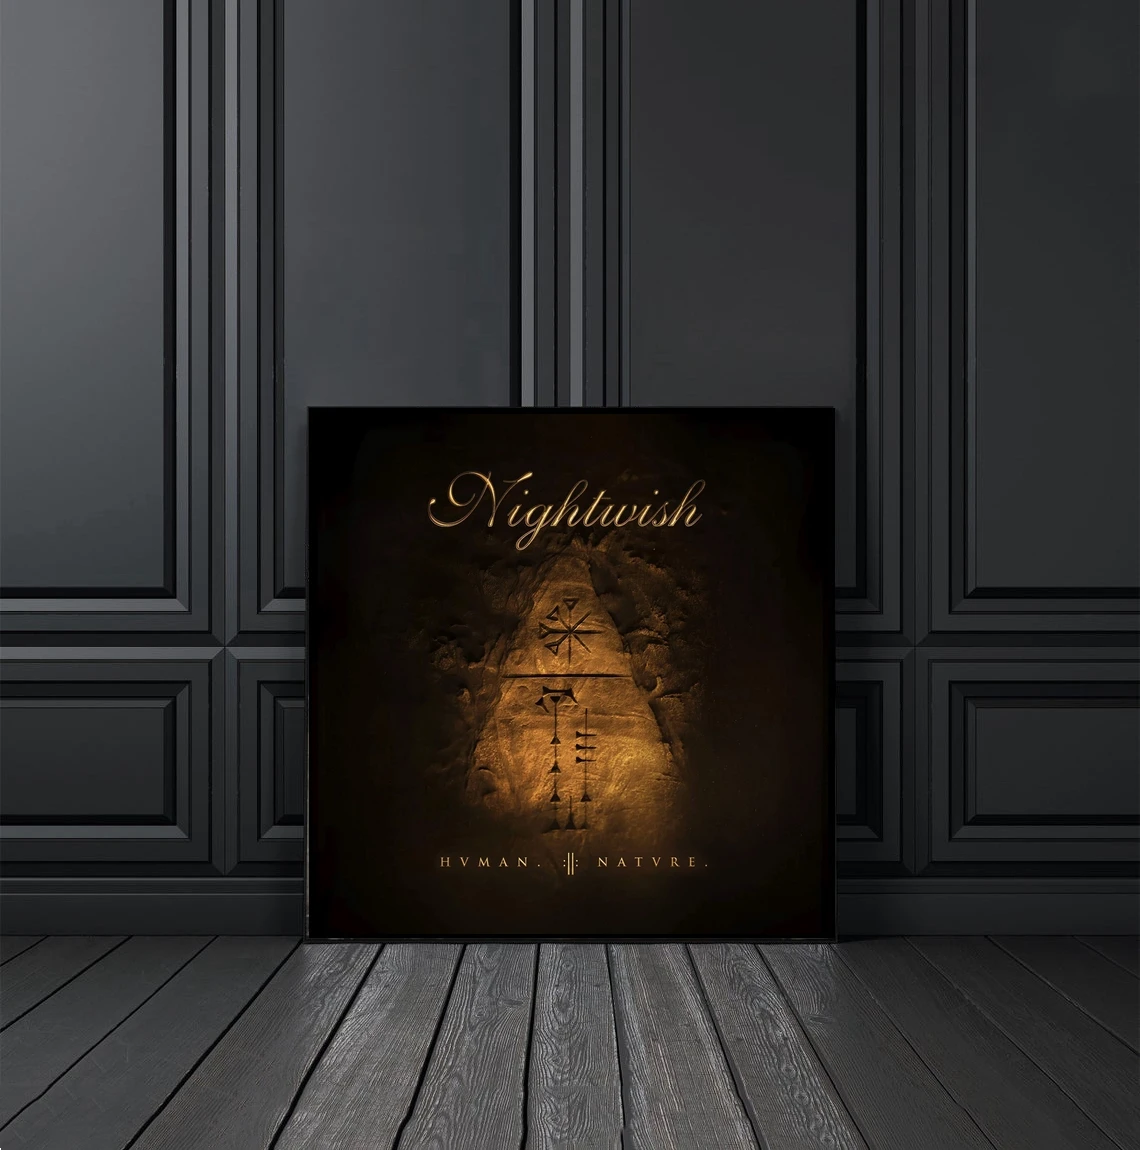 

Человеческая природа. Альбом для музыки Nightwish, постер, холст, печать, рэп, хип-хоп, музыка, звезда, певец, домашний картины для украшения стен